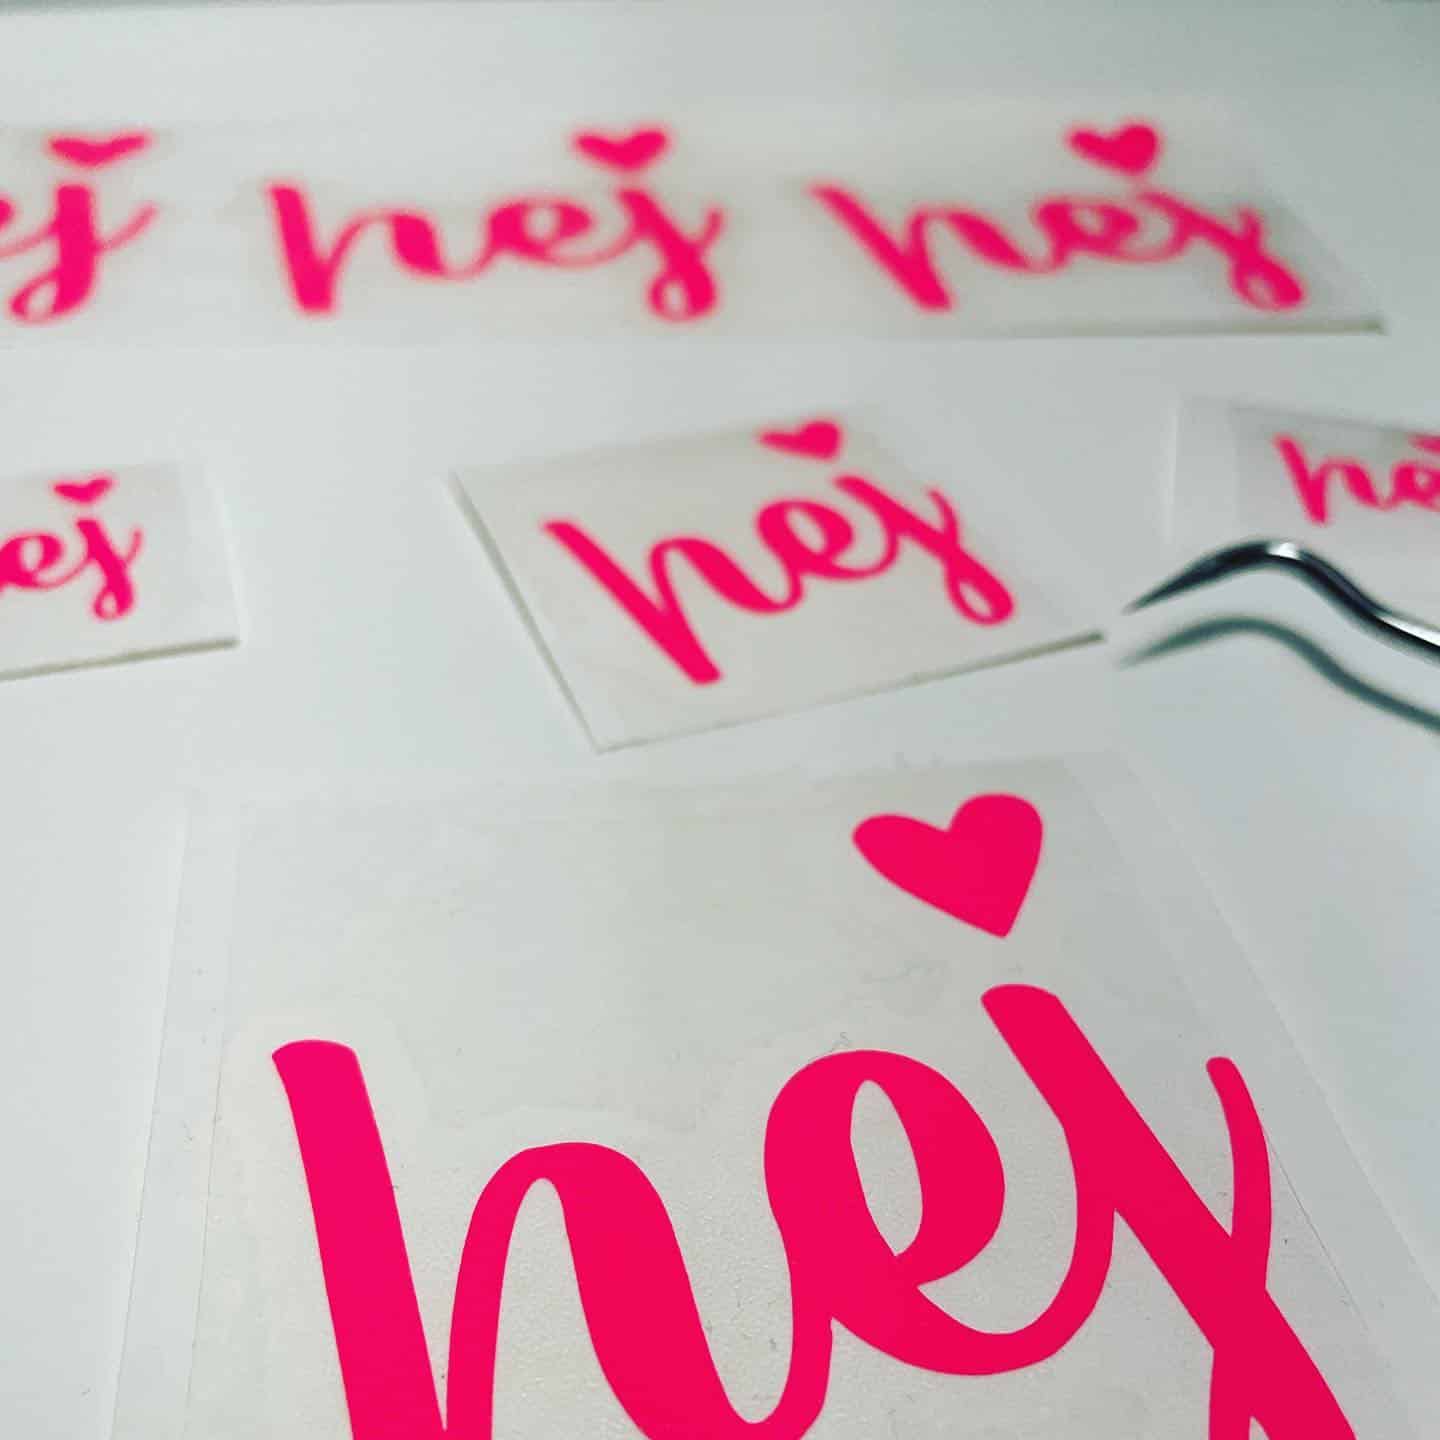 Hej 💗

Ich hoffe, ihr seid gut in die neue Woche gestartet! Ich lag faul am See und hab gar nichts gemacht 🙆🏼‍♀️

Dafür war ich gestern etwas motivierter und habe seit langem den Plotter mal wieder gestartet. Denn die neonpinke Folie hat mich schon seit langem angelächelt. Ein HEJ in neonpink.

Welches Wort oder Schriftzug muss es unbedingt in Neonpink geben?
Kommentare los! 🙏🏻

#neonliebe #neonpink #pink #sticker #plotterliebe #hej #faulseinistwunderschön #happymontag #oopsdesign #stadtstgallen